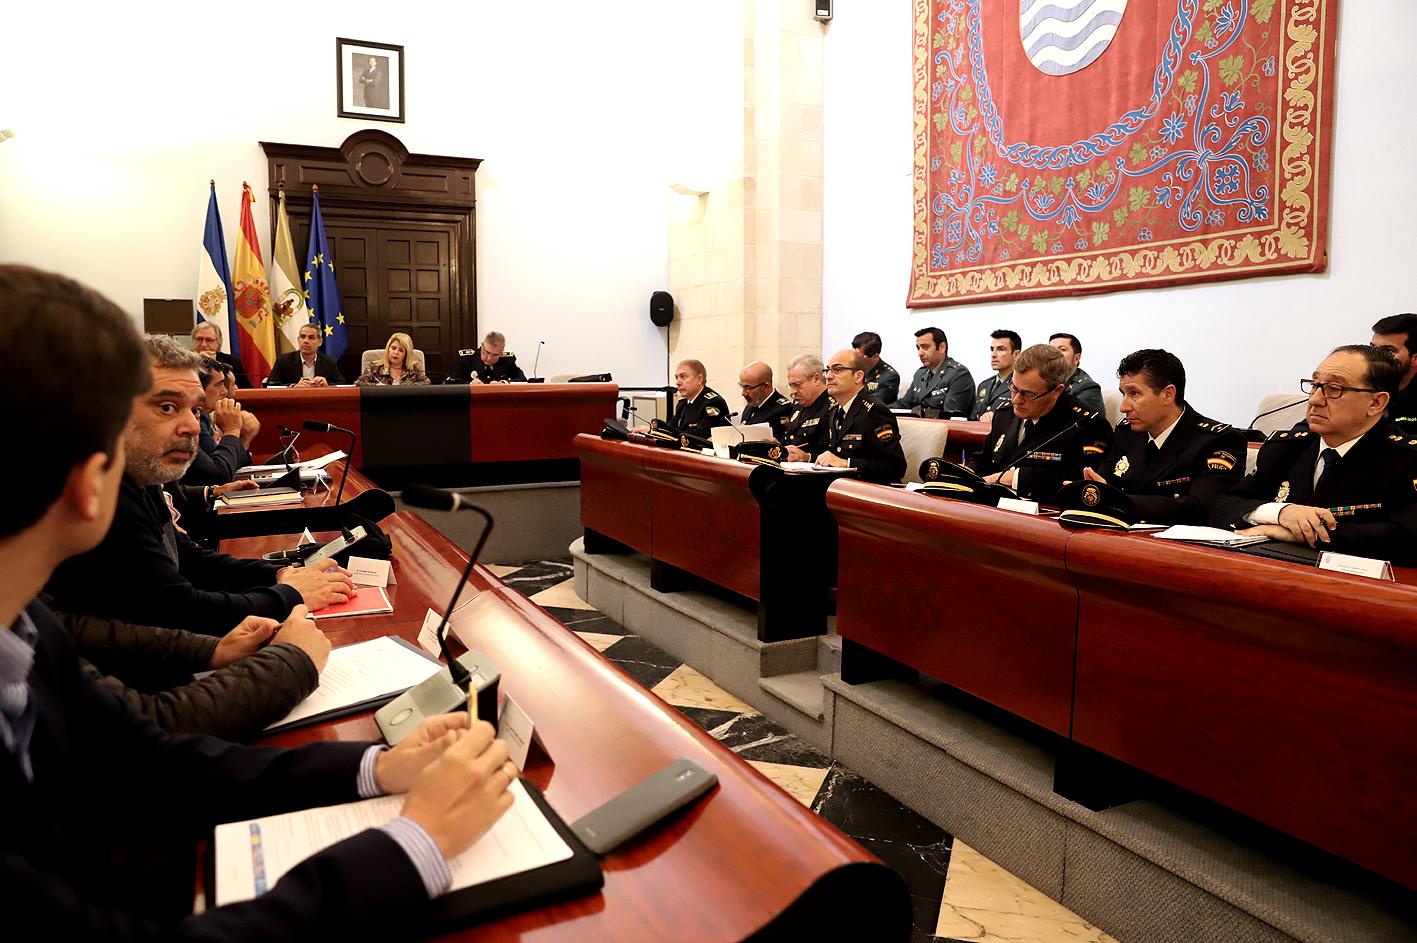 El PP pide una reunión urgente de la Junta Local de Seguridad ante el aumento de la delincuencia en Jerez